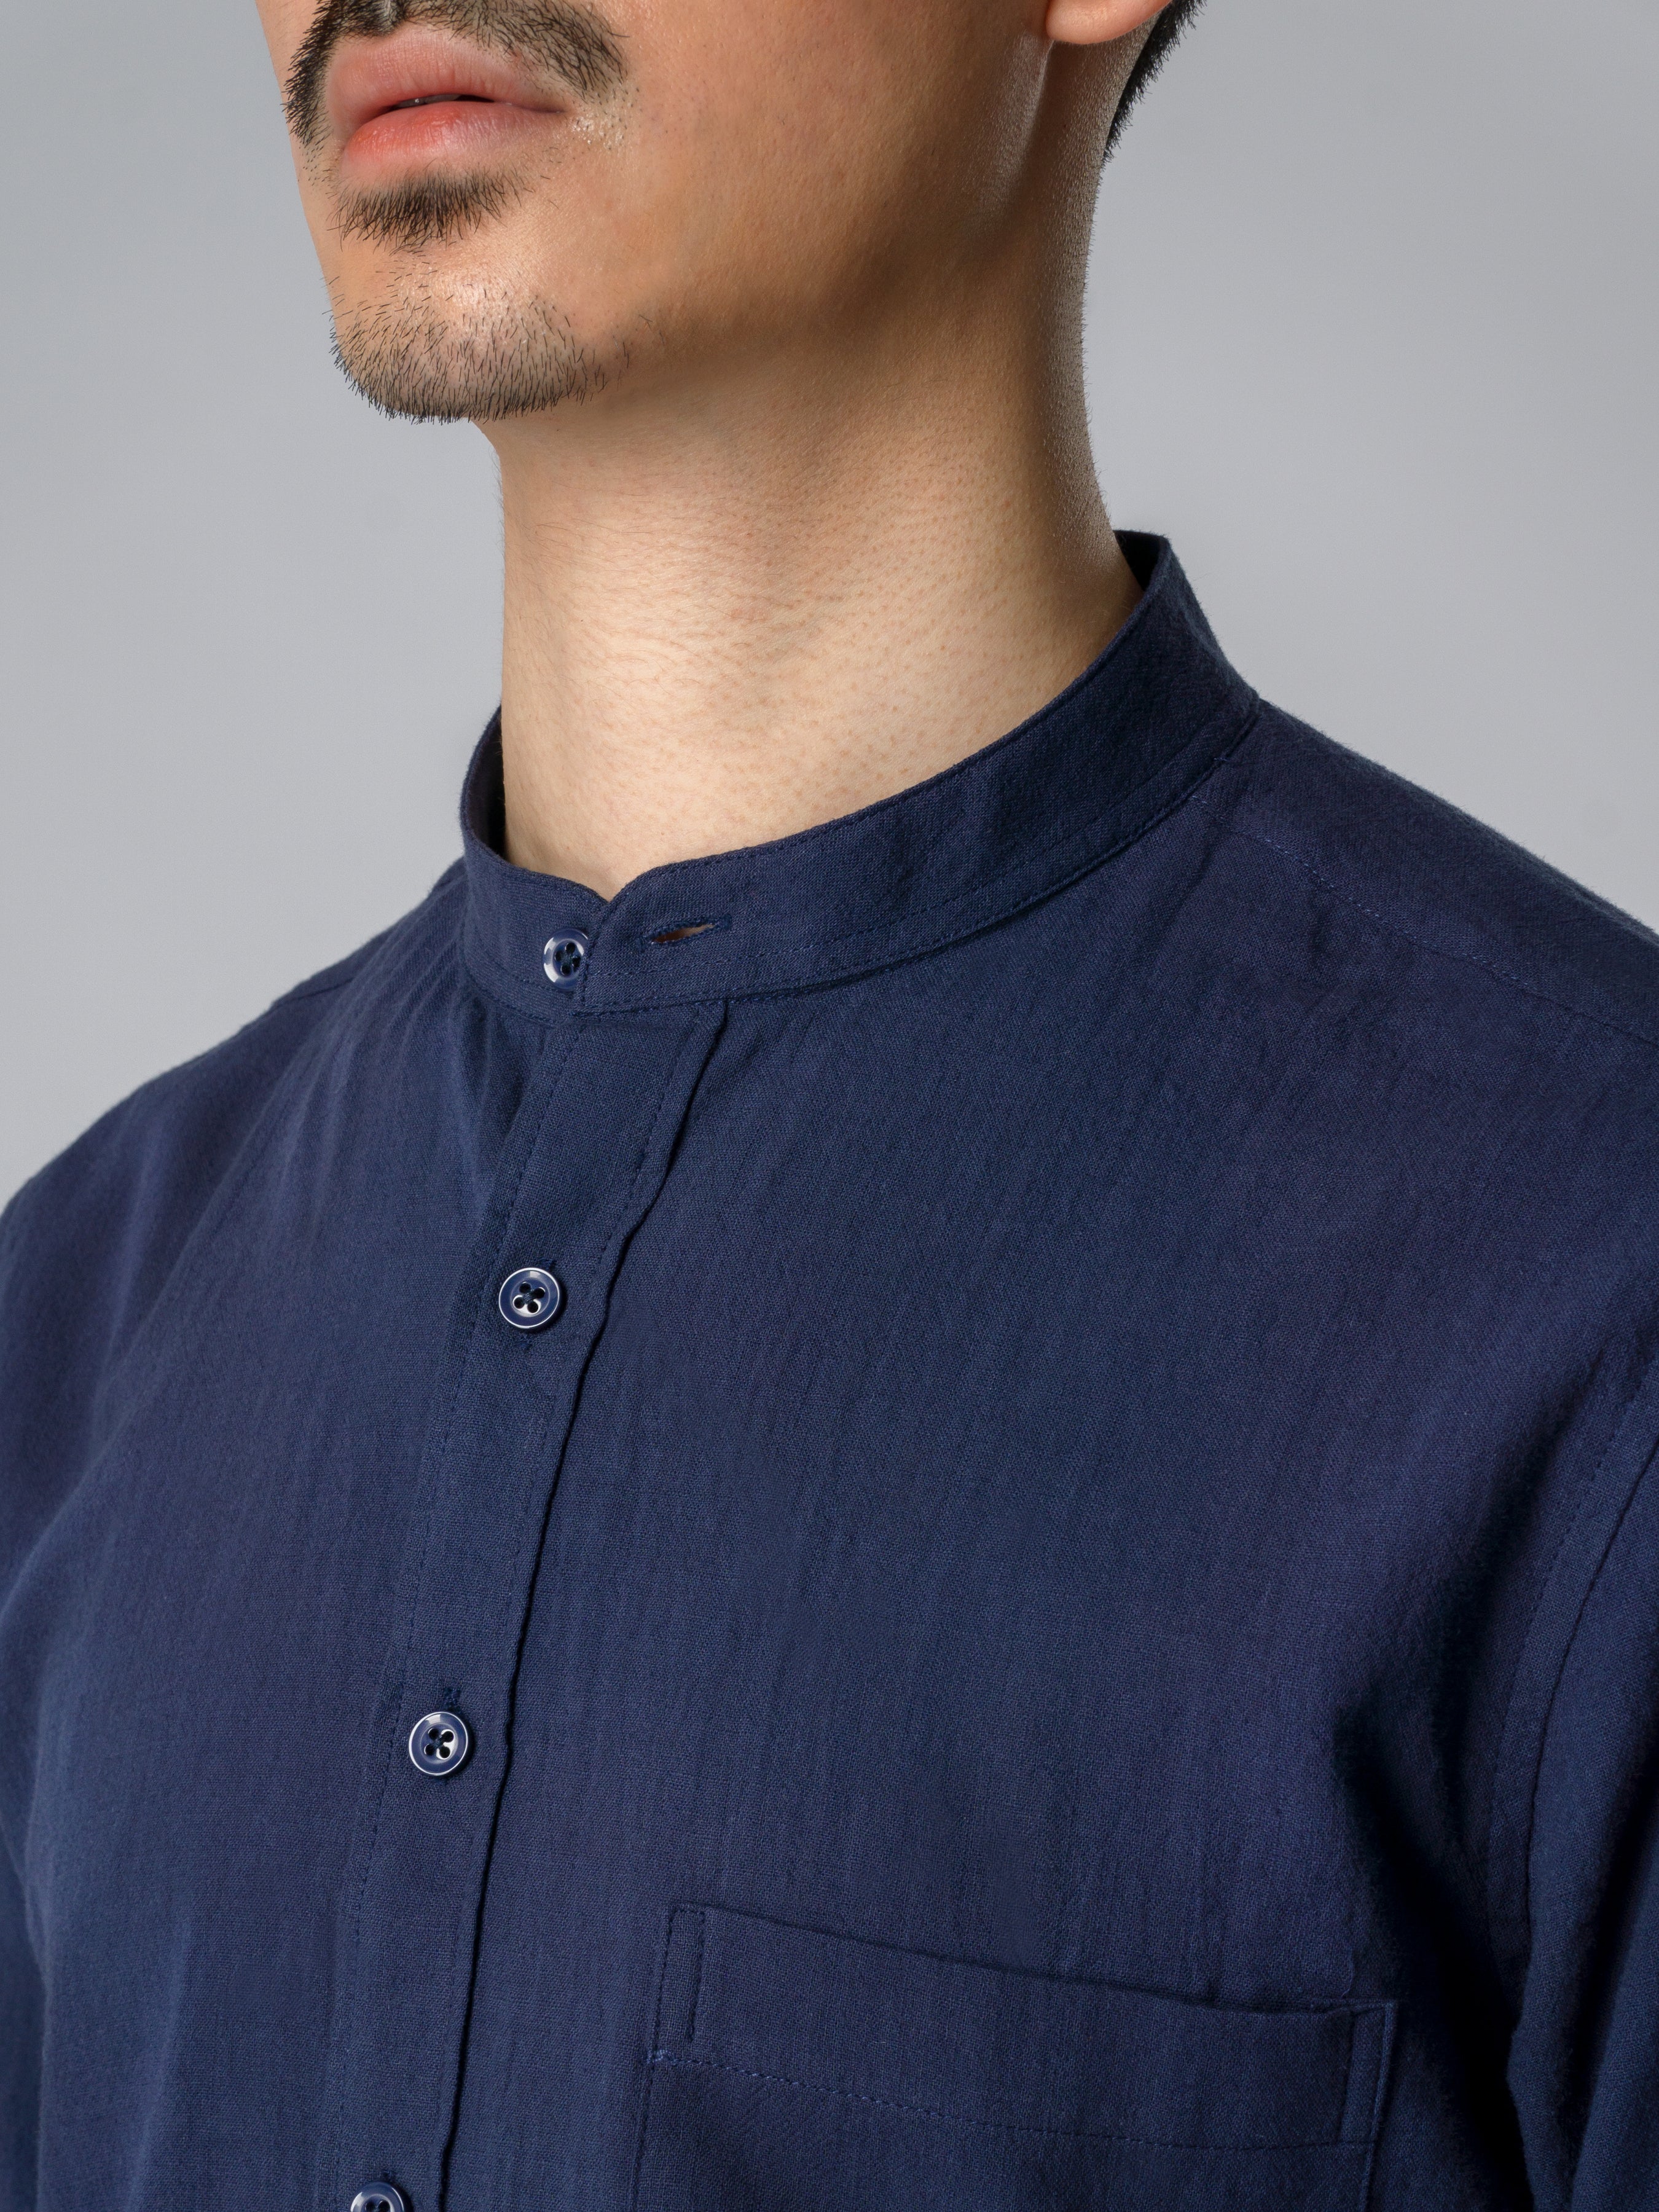 Stand Collar Shirt - Navy Blue